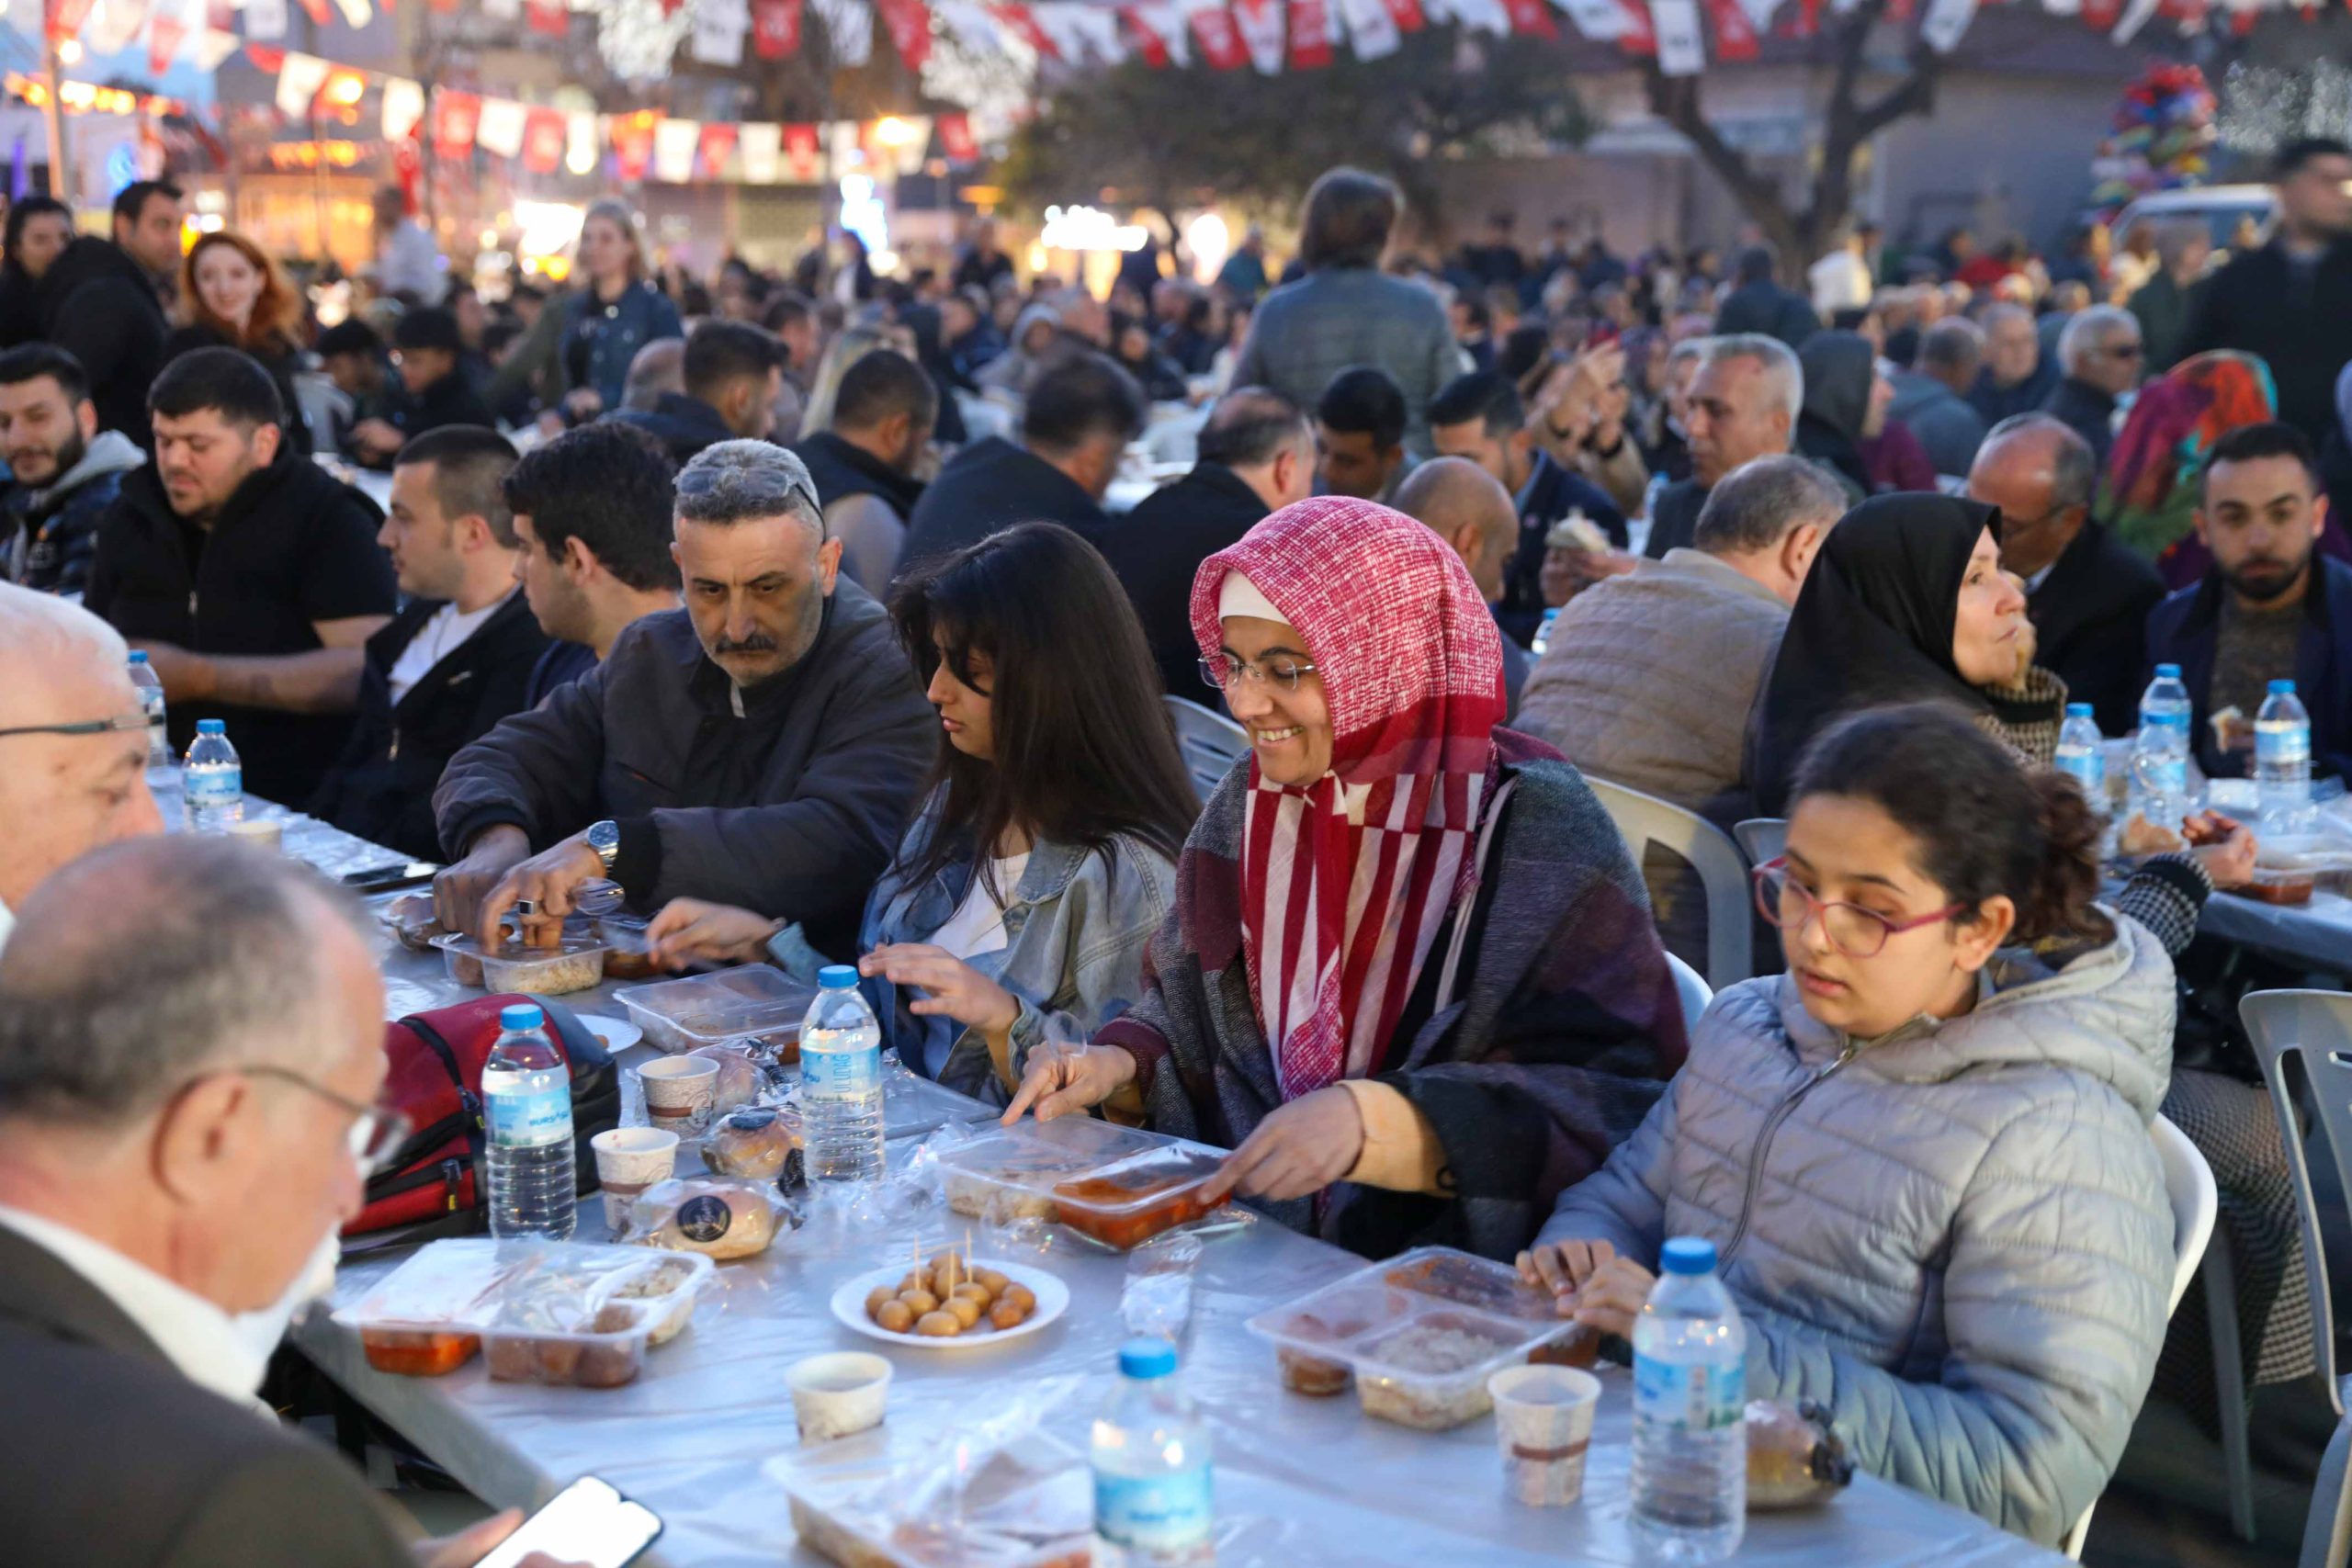 buca belediyesi BUCA Belediyesi, ramazan geleneklerini kentte yaşatmaya devam ediyor. Belediye, ramazan ayı boyunca düzenlenecek etkinliklerle ramazanın bereketini mahallelere taşıyor.